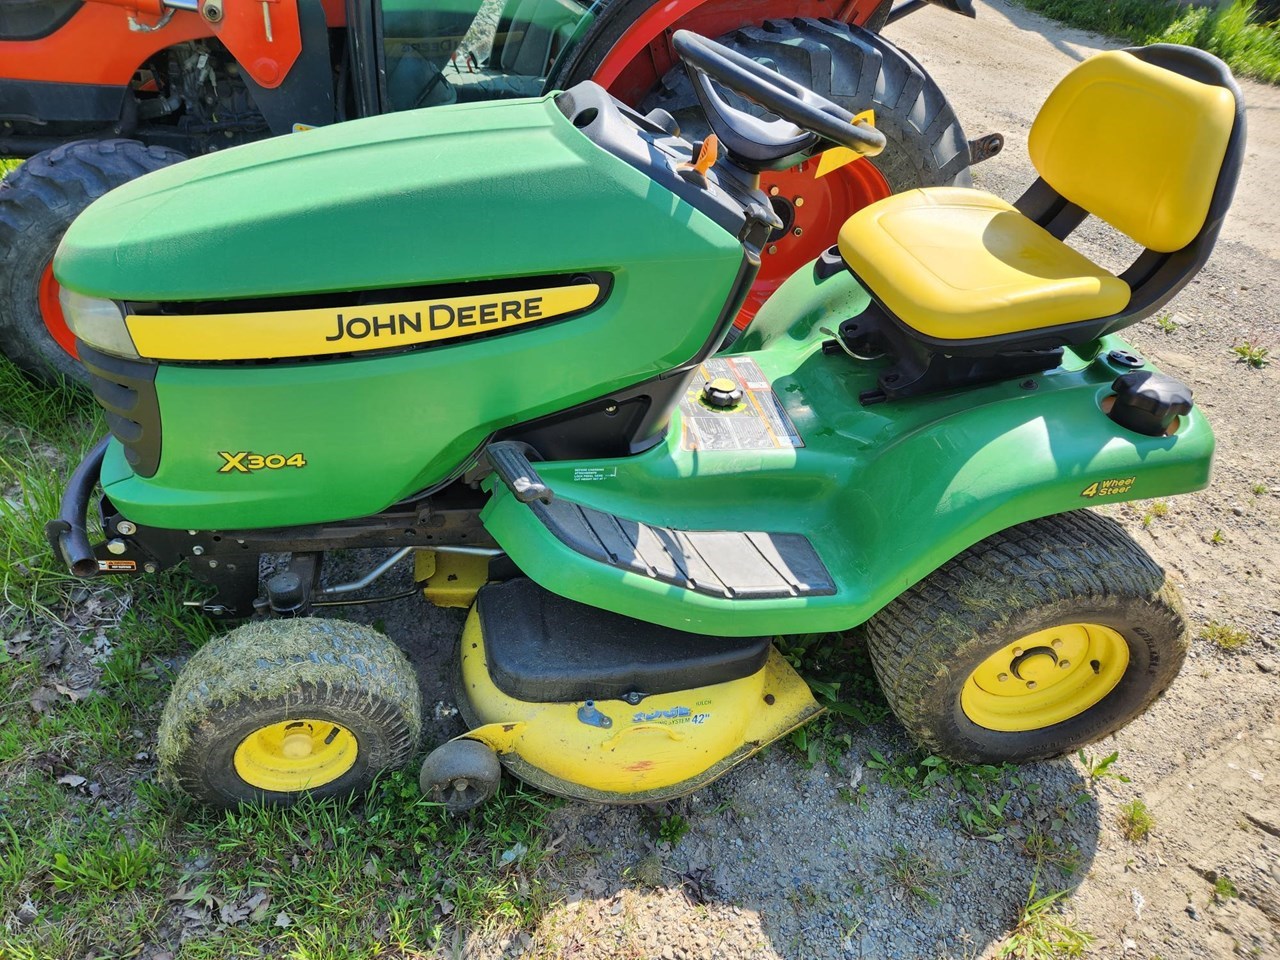 2009 John Deere X304 Lawn Mower For Sale